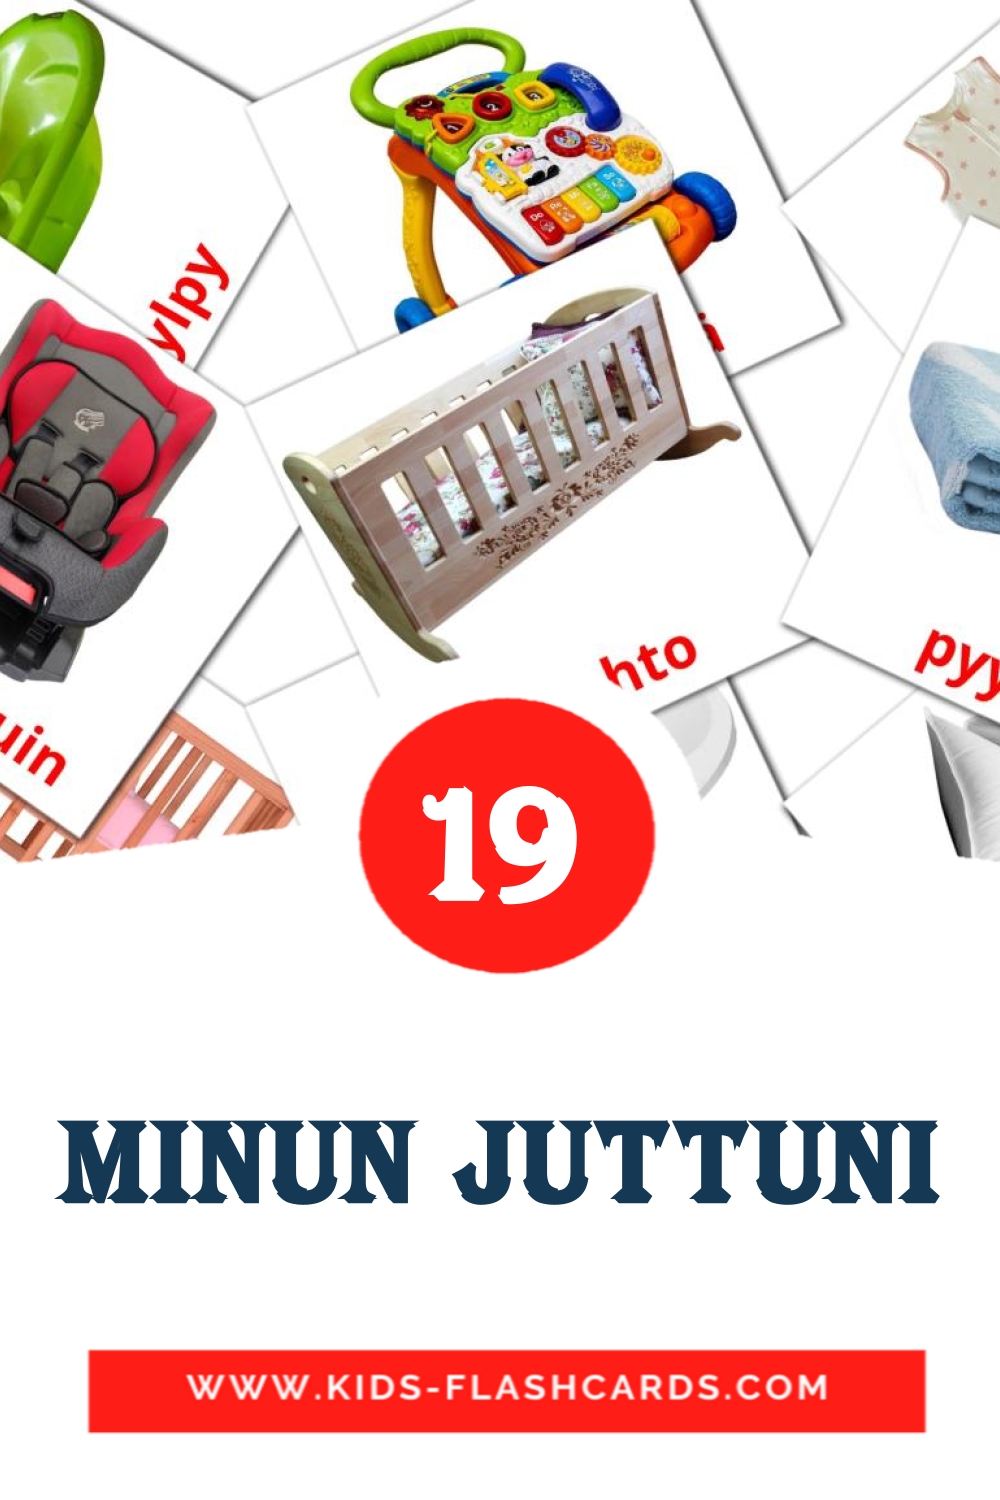 Minun juttuni на финском для Детского Сада (20 карточек)